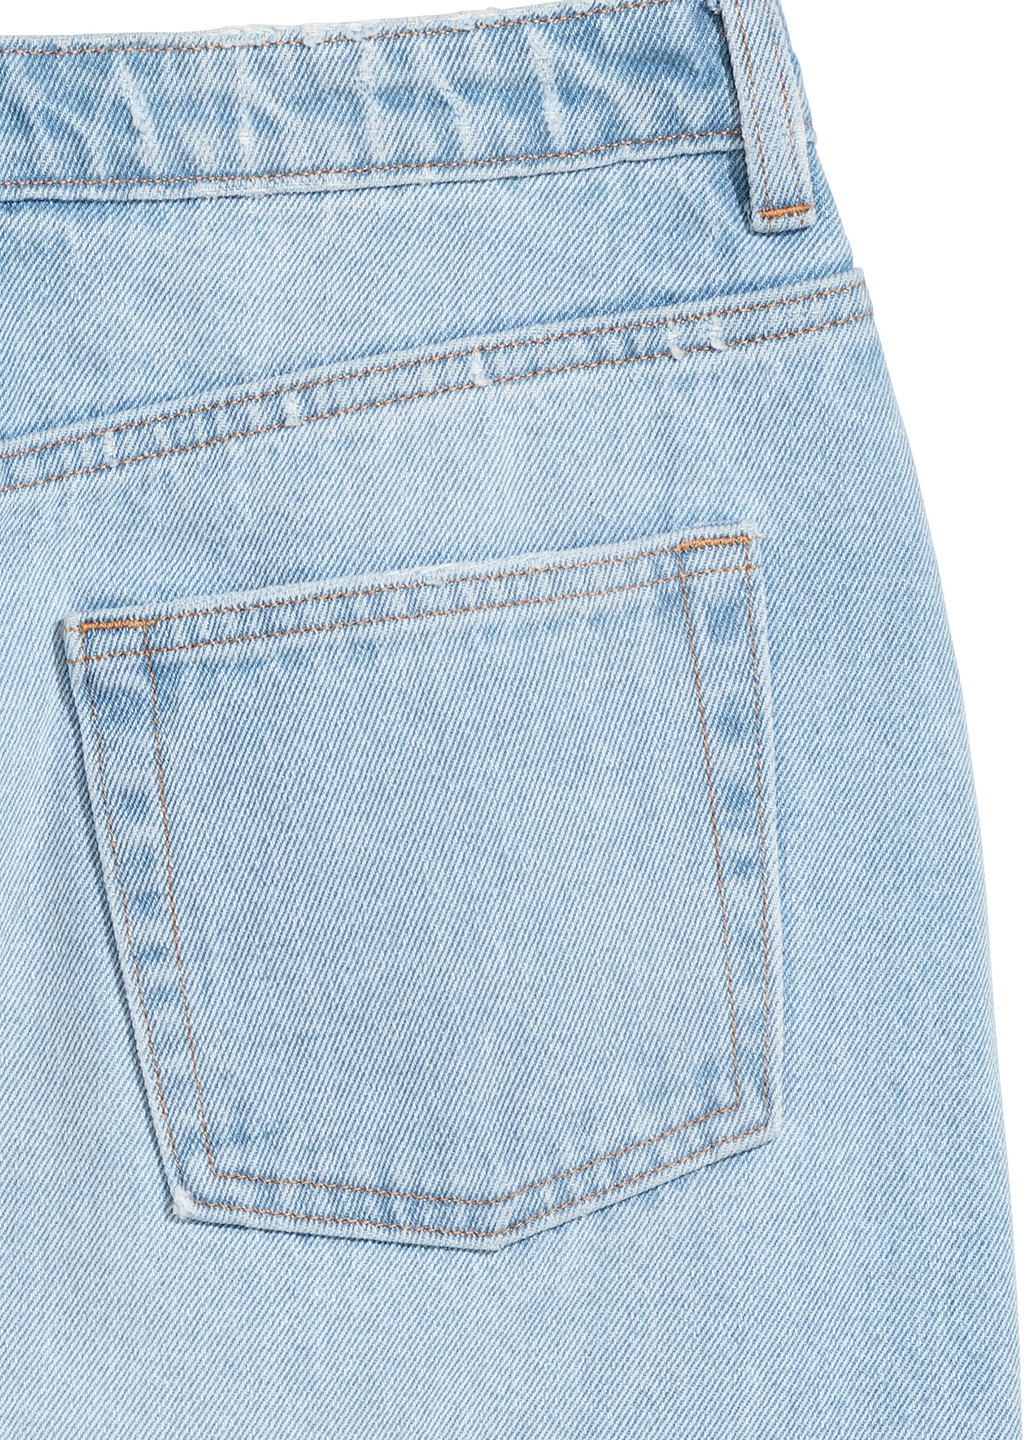 Голубая джинсовая однотонная юбка H&M карандаш